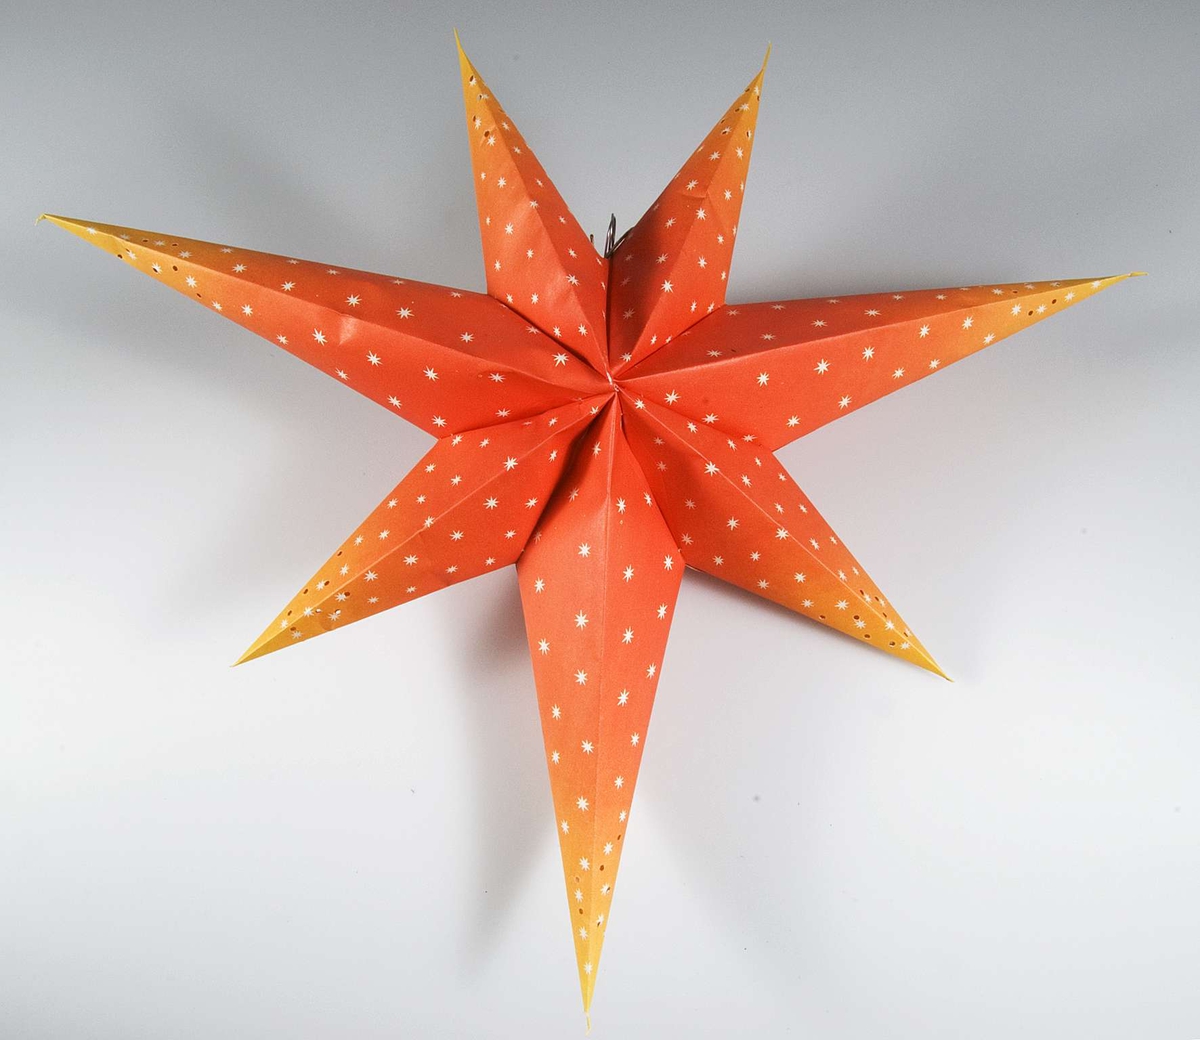 Adventsstjärna av papper med elektrisk lampa och sladd. Stjärnan rödorange med vita stjärnor och perforerad i ändarna.
